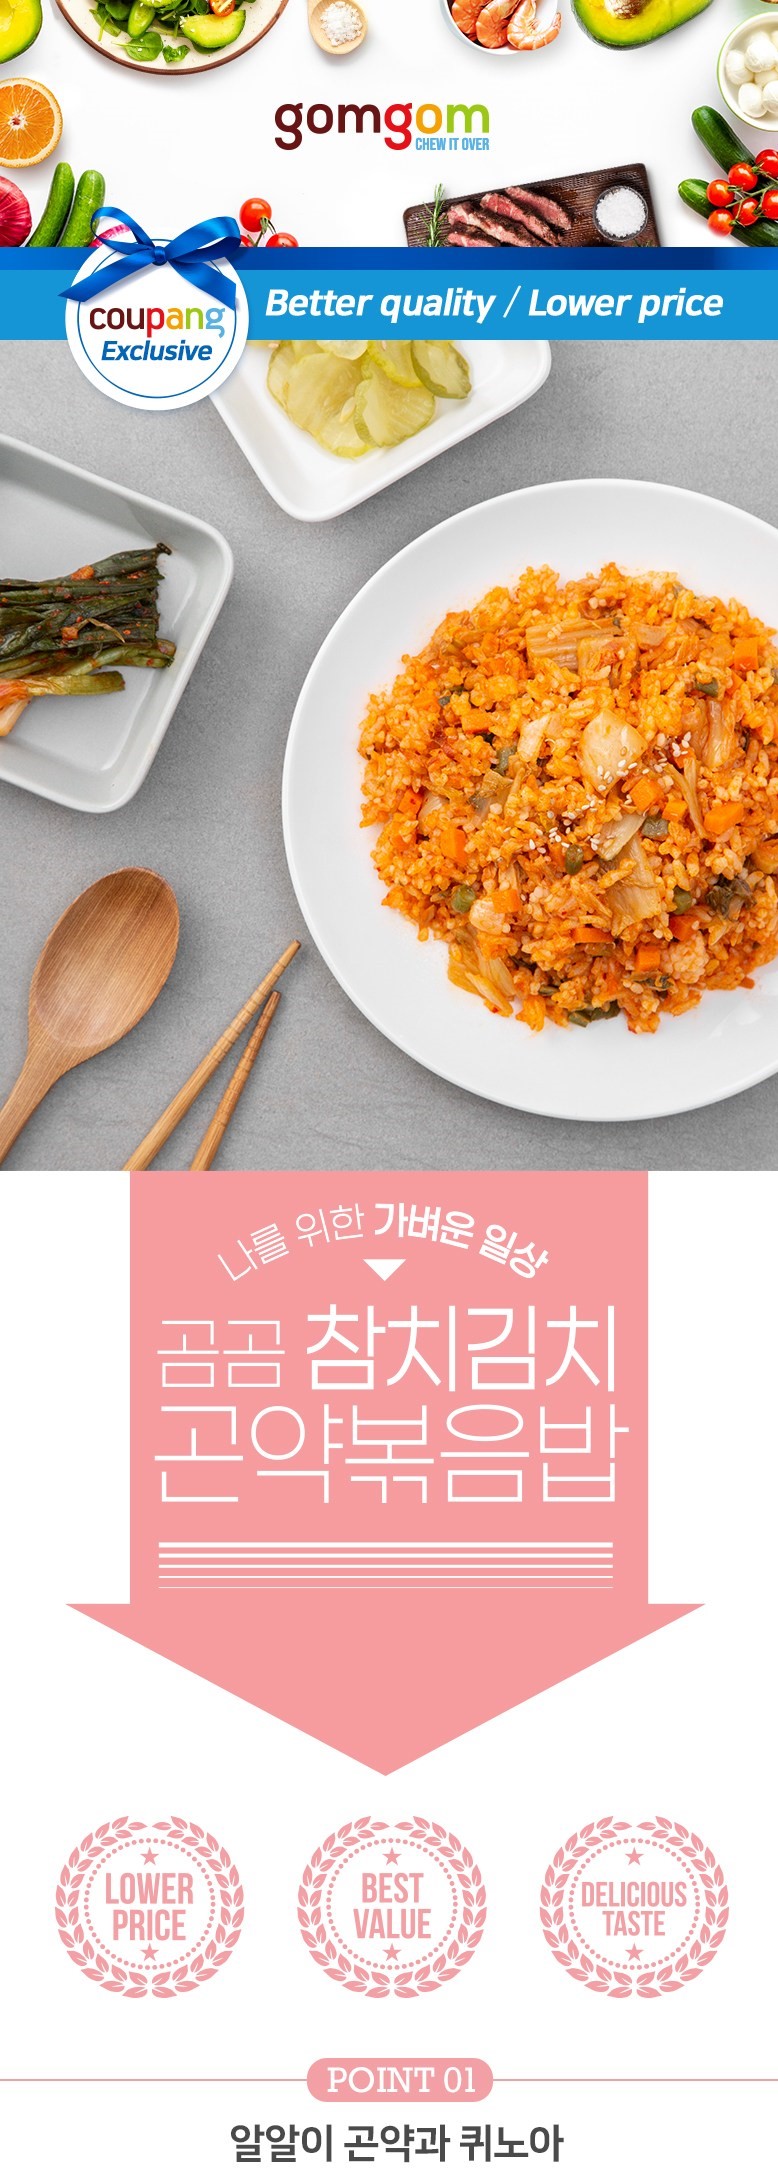 韓國食品-[Gomgom] Mixed 營養雜穀蒟蒻炒飯 (吞拿魚泡菜) 200g